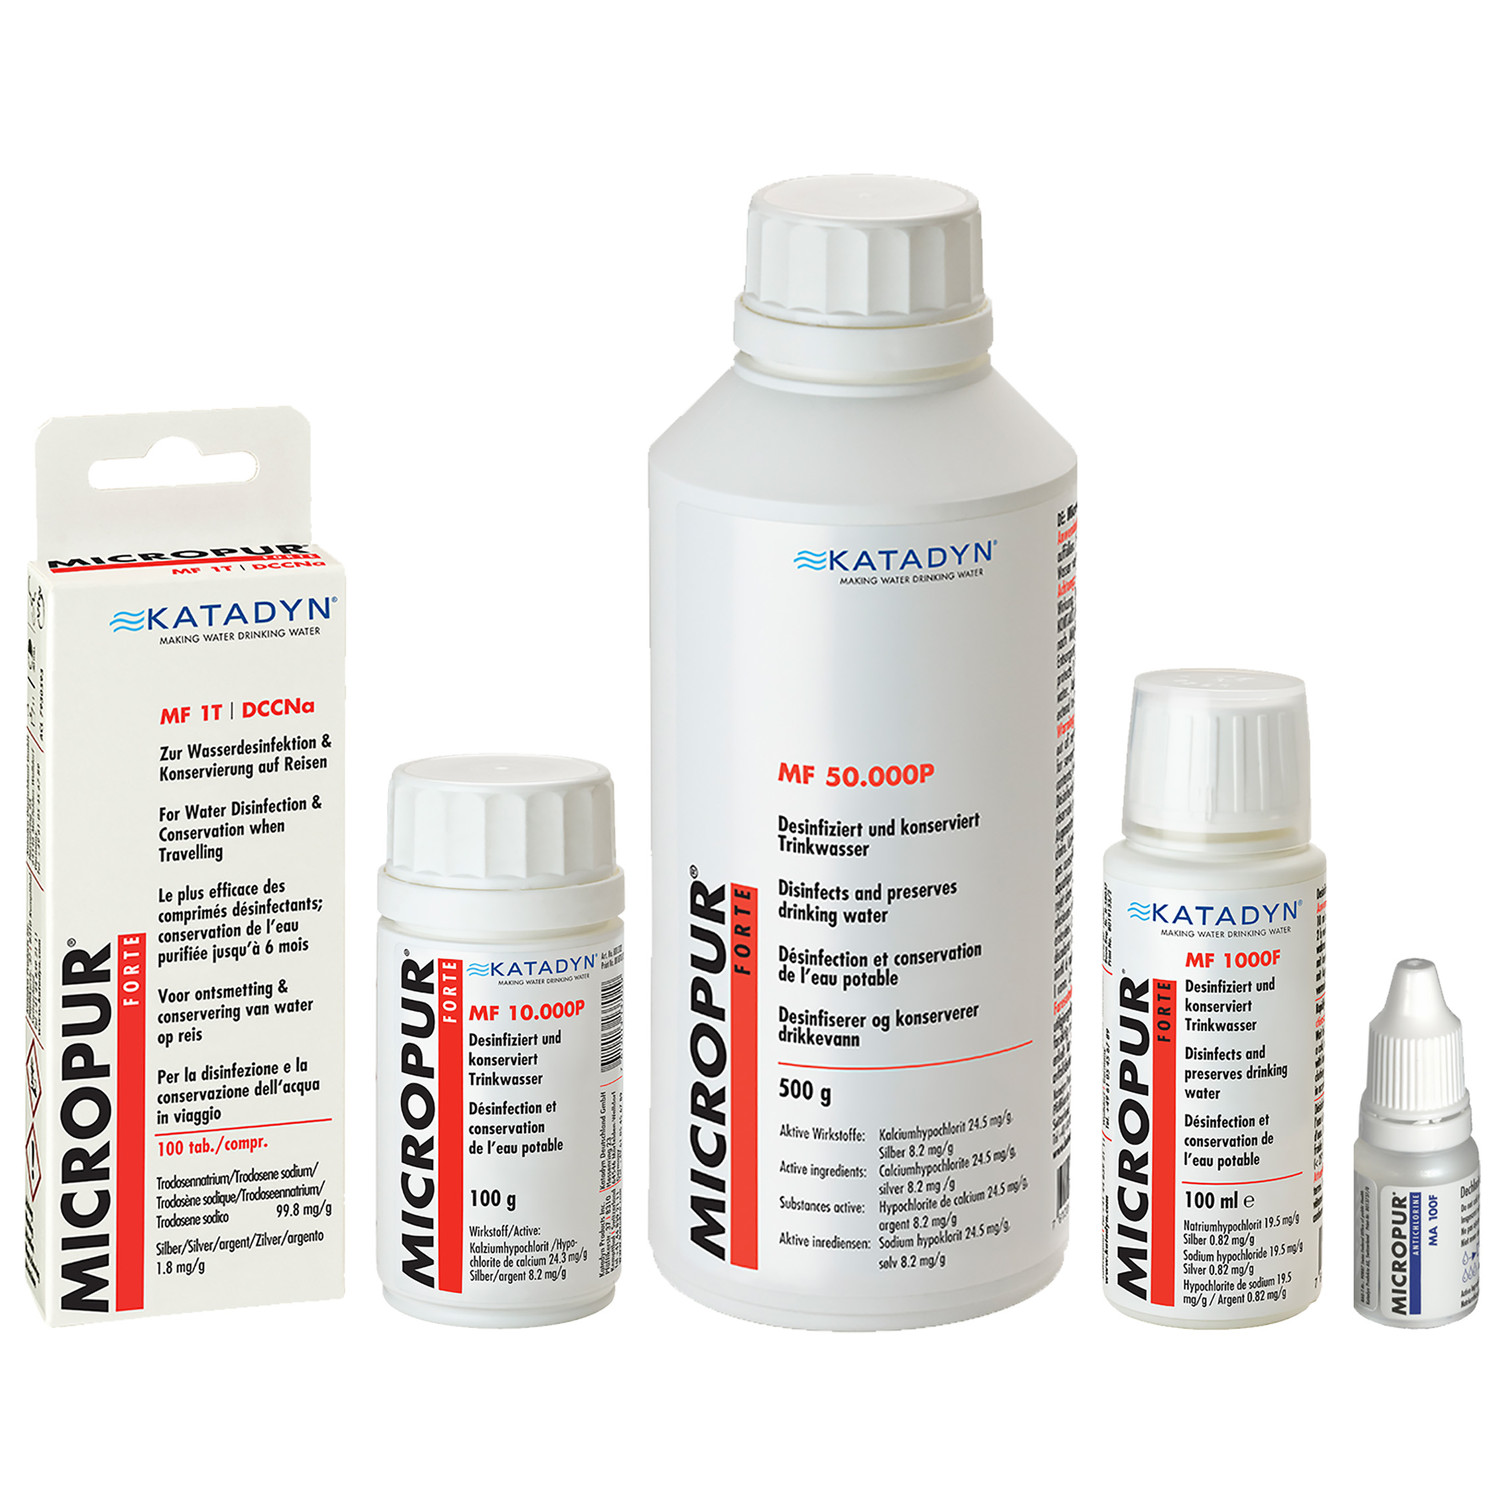 Katadyn Micropur Forte Wasserdesinfektion als Tabletten, Flüssigkeit und Pulver